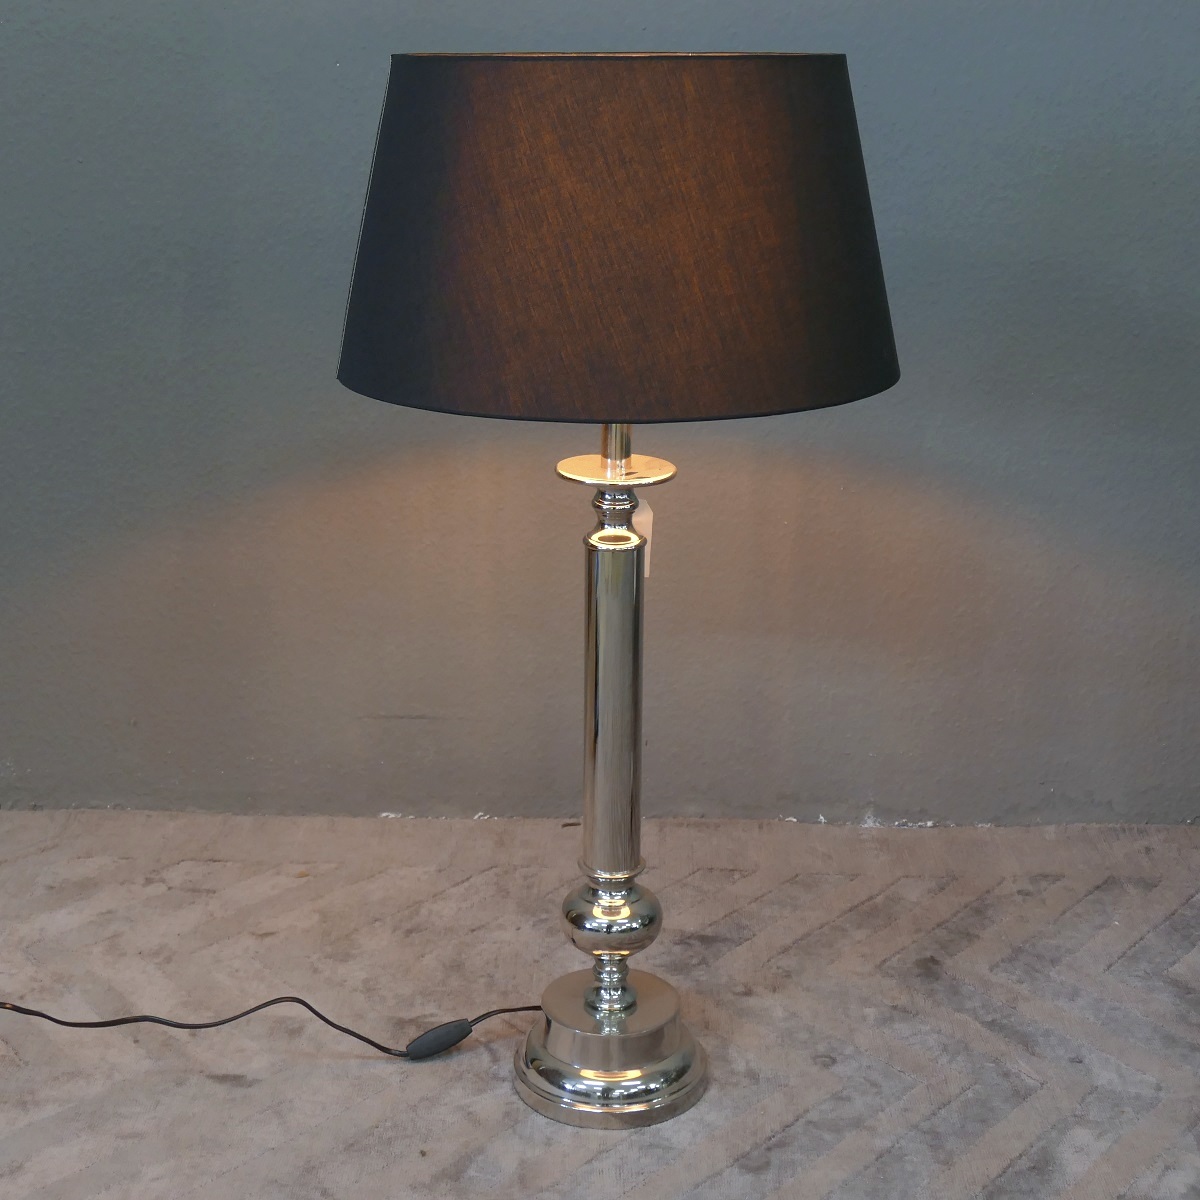 Grosse stylishe Lampe Leuchte Tischleuchte Tischlampe Chrom  Black Höhe 91 cm